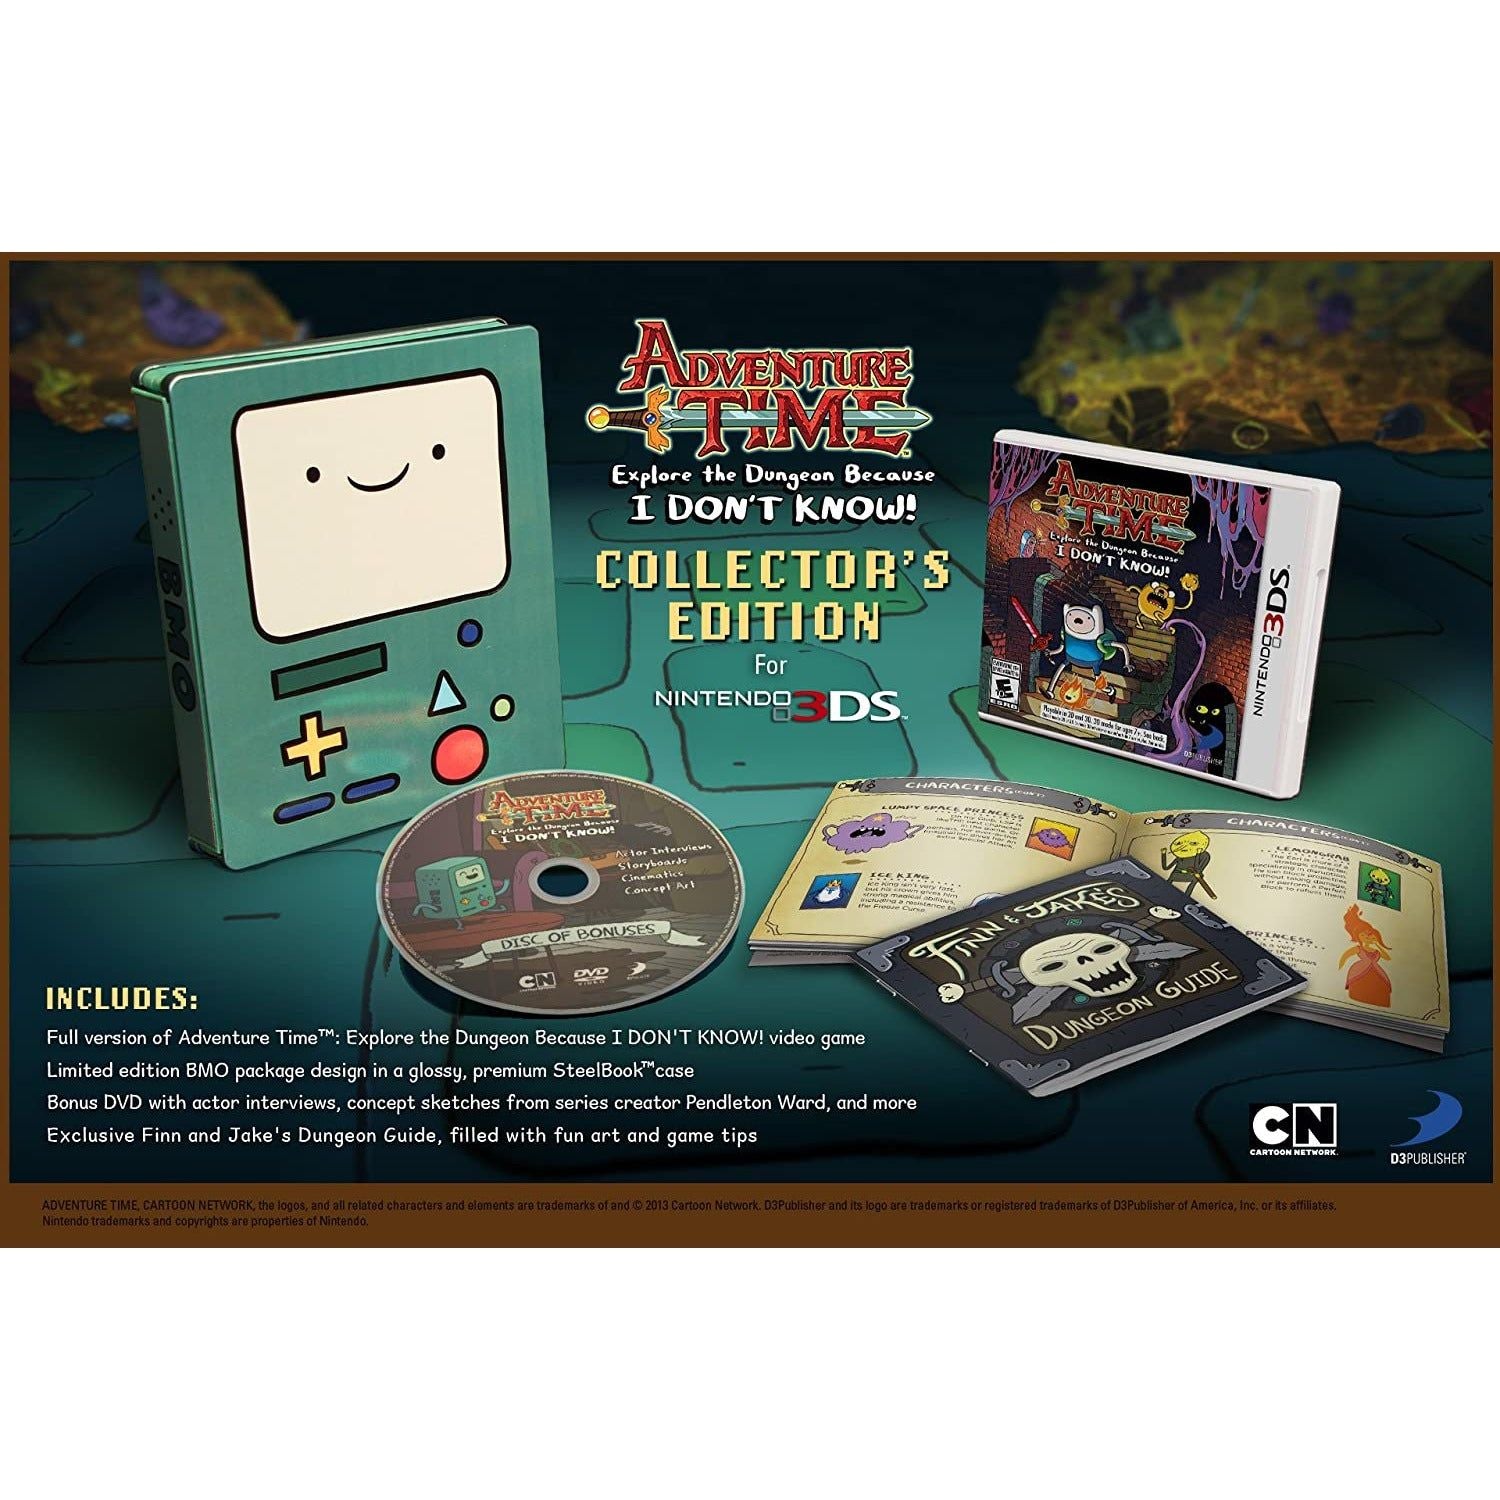 3DS - Adventure Time Explorez le donjon parce que je ne sais pas Edition Collector